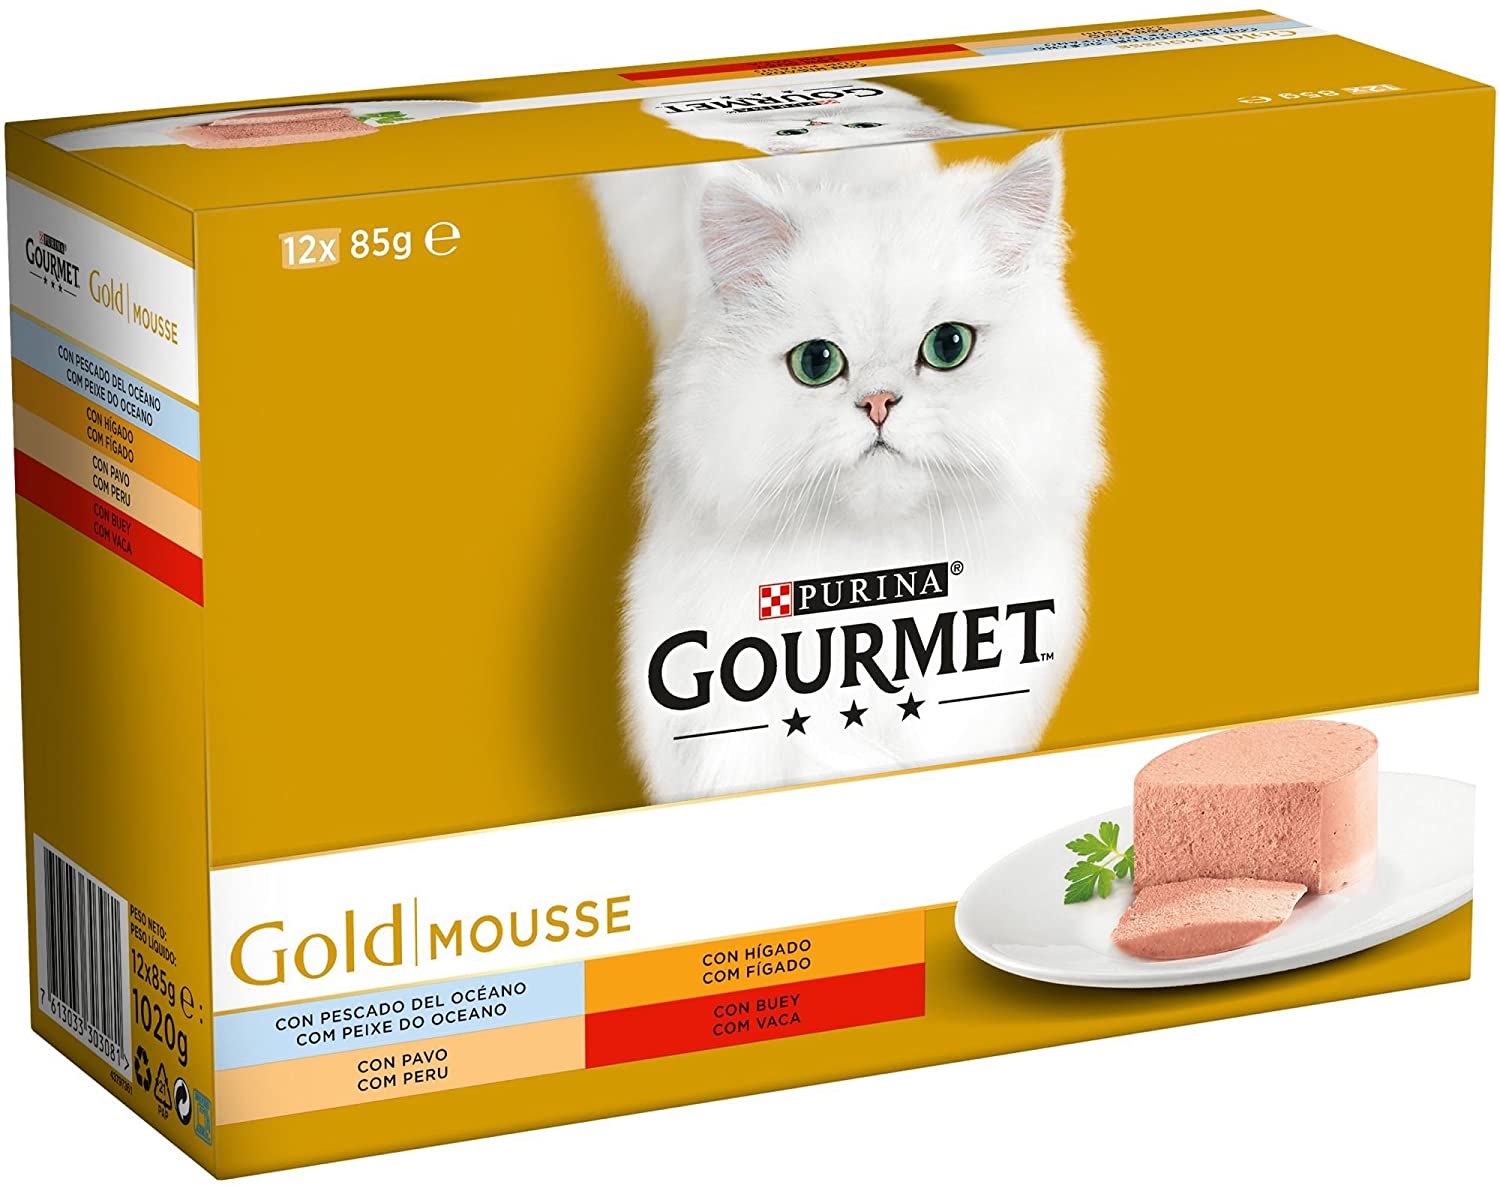  Purina Gourmet Gold Mousse comida para gatos Surtido sabores 8 x [12 x 85 g] 